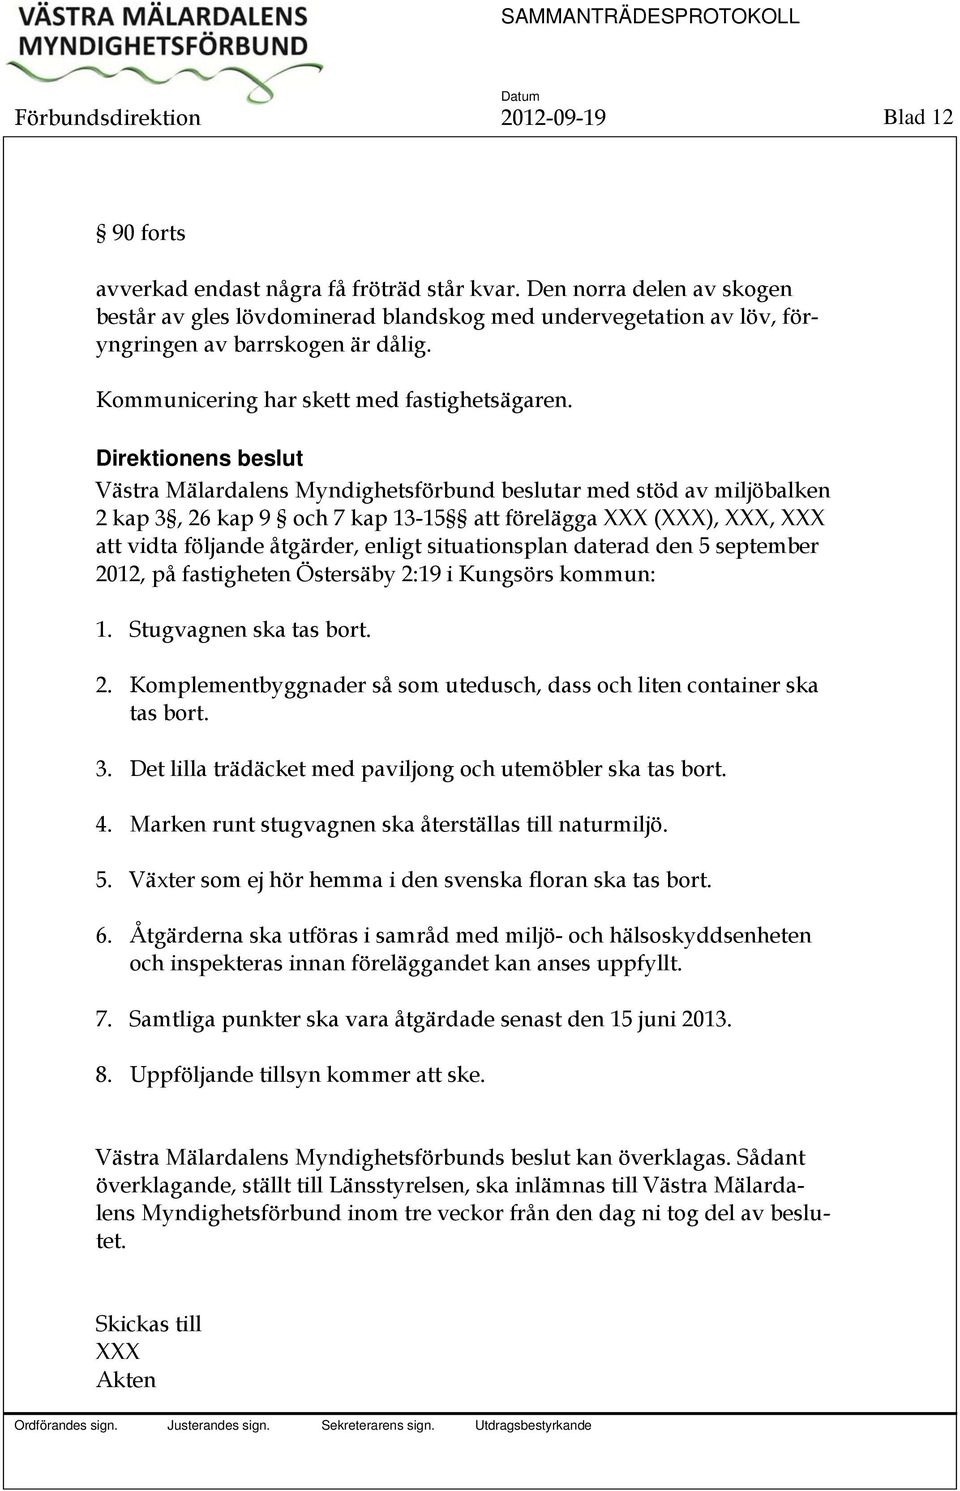 Direktionens beslut Västra Mälardalens Myndighetsförbund beslutar med stöd av miljöbalken 2 kap 3, 26 kap 9 och 7 kap 13-15 att förelägga XXX (XXX), XXX, XXX att vidta följande åtgärder, enligt